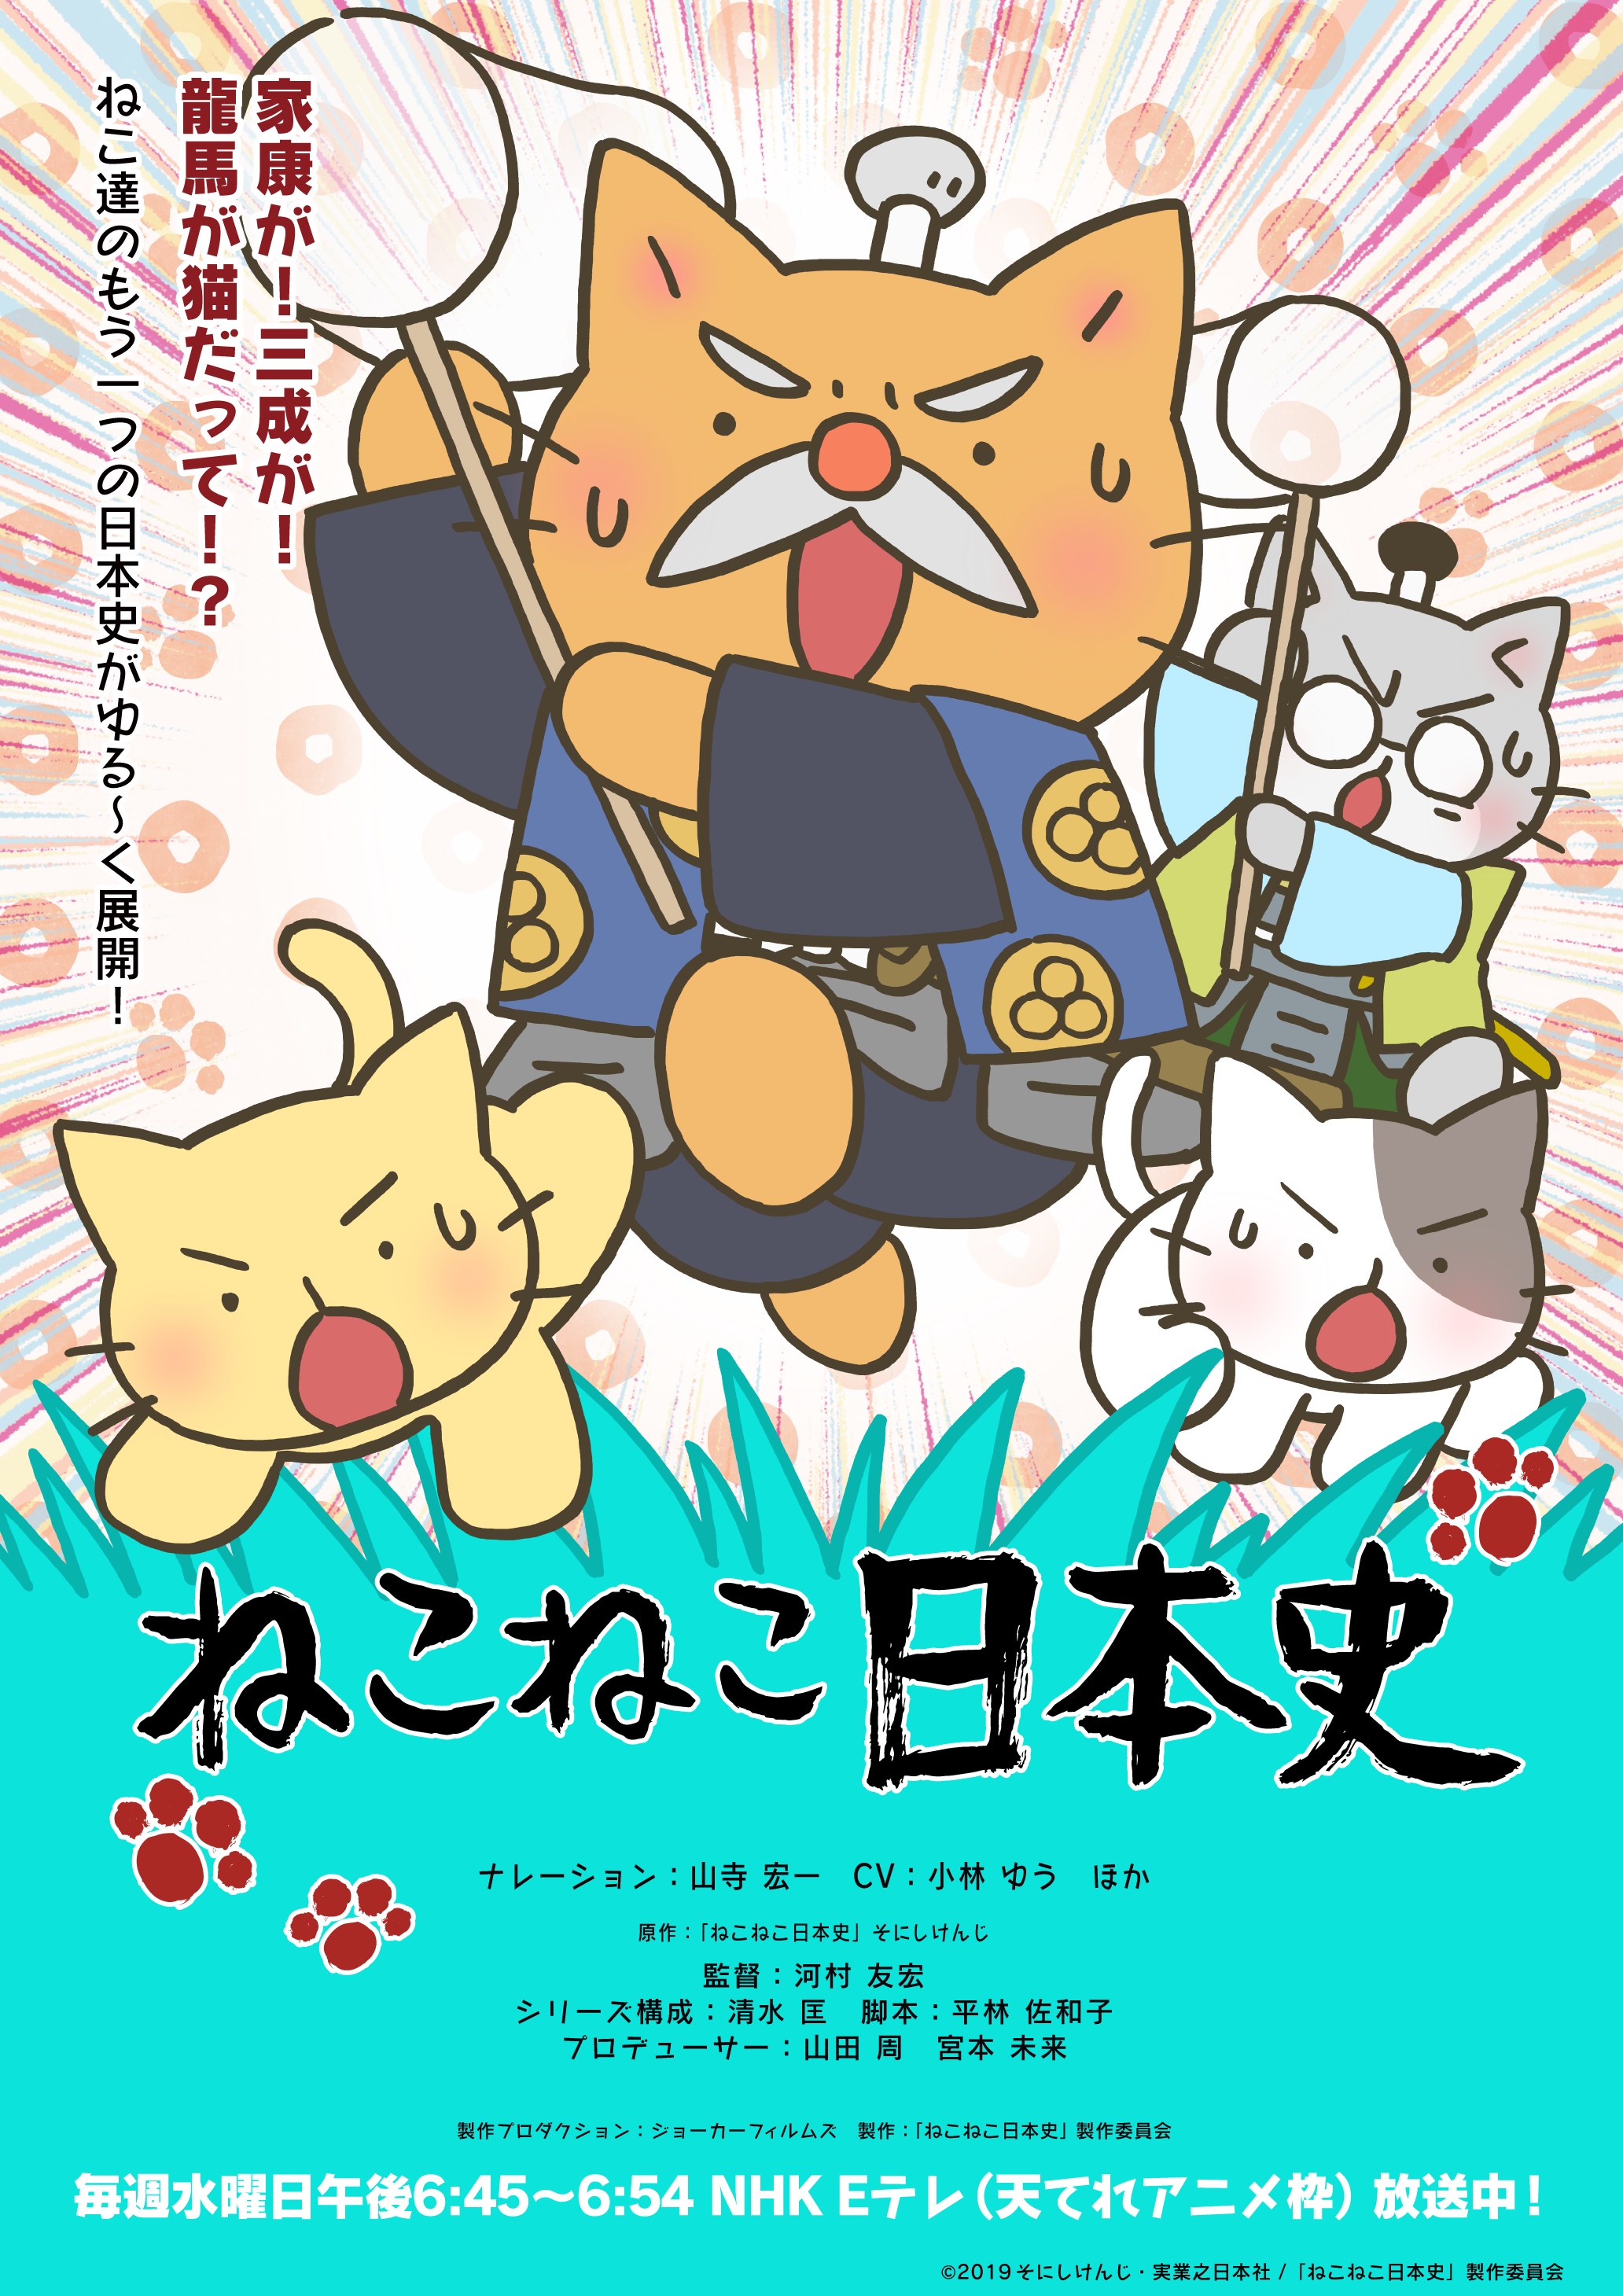 アニメ ねこねこ日本史 第4期後半エンディングテーマのアーティストがむぎ 猫 に決定 オープニングテーマは前回に引き続きelfin が担当 株式会社アニプレックスのプレスリリース